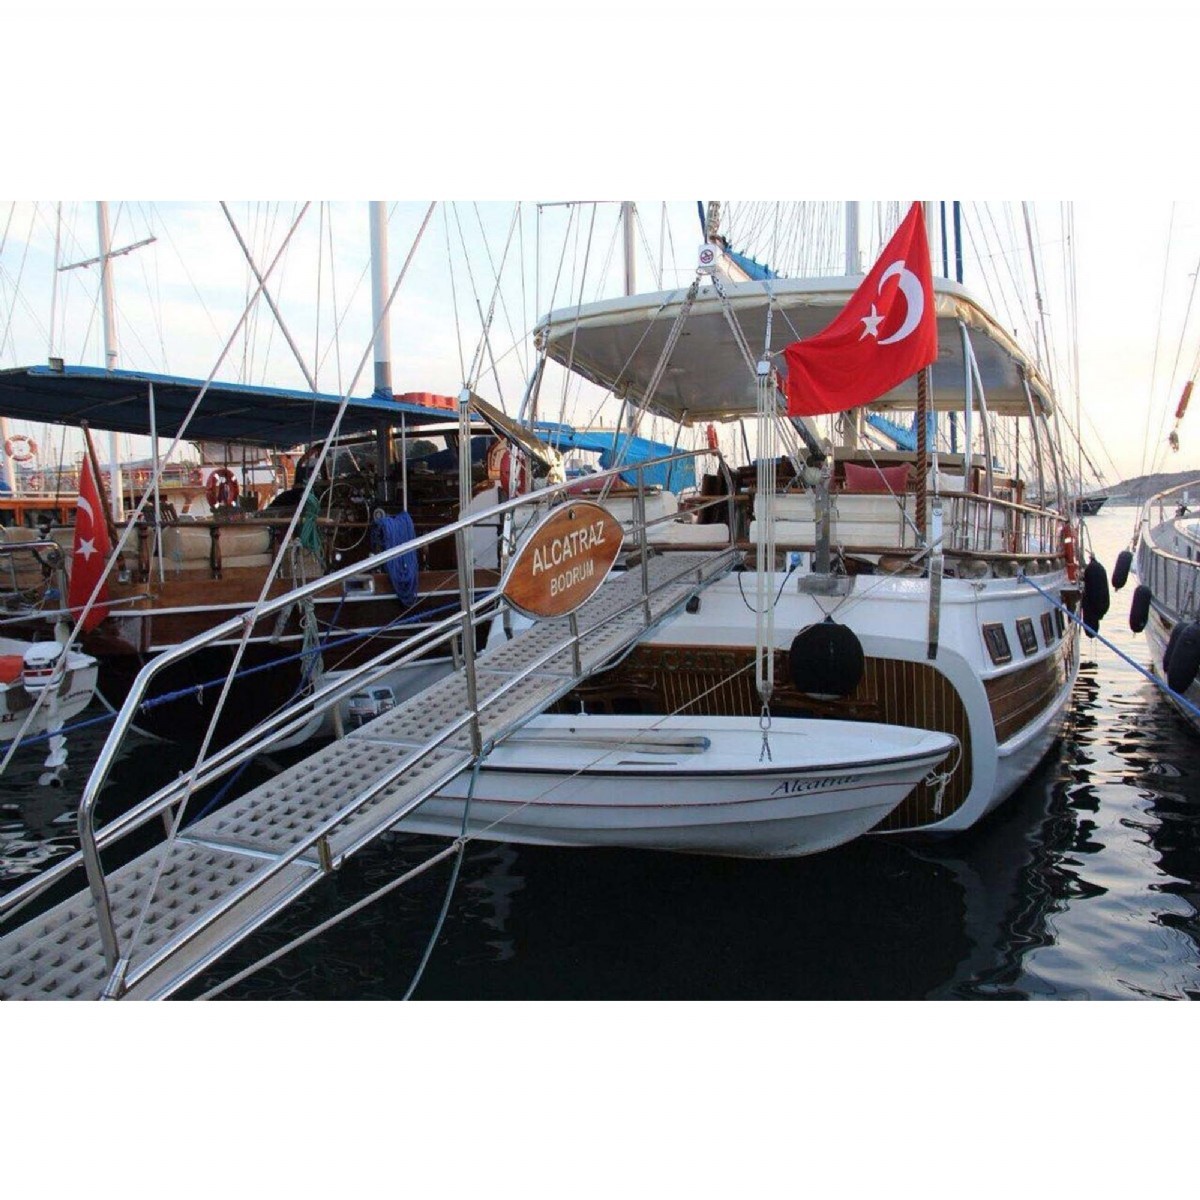 High Class Gulets | Gulet Charter H624 Highclass Gulet Yacht For 12 People | H624 | cheap yacht rentals, private yacht charter prices, gulet boat turkey, private yacht cruises, economÄ±c gulet charter, Yacht charter Turkey, Yachting, gulet rental Turkey, yacht rentals Turkey, boat charter Turkey, Bodrum yacht charter, Alkatraz Gulet | 